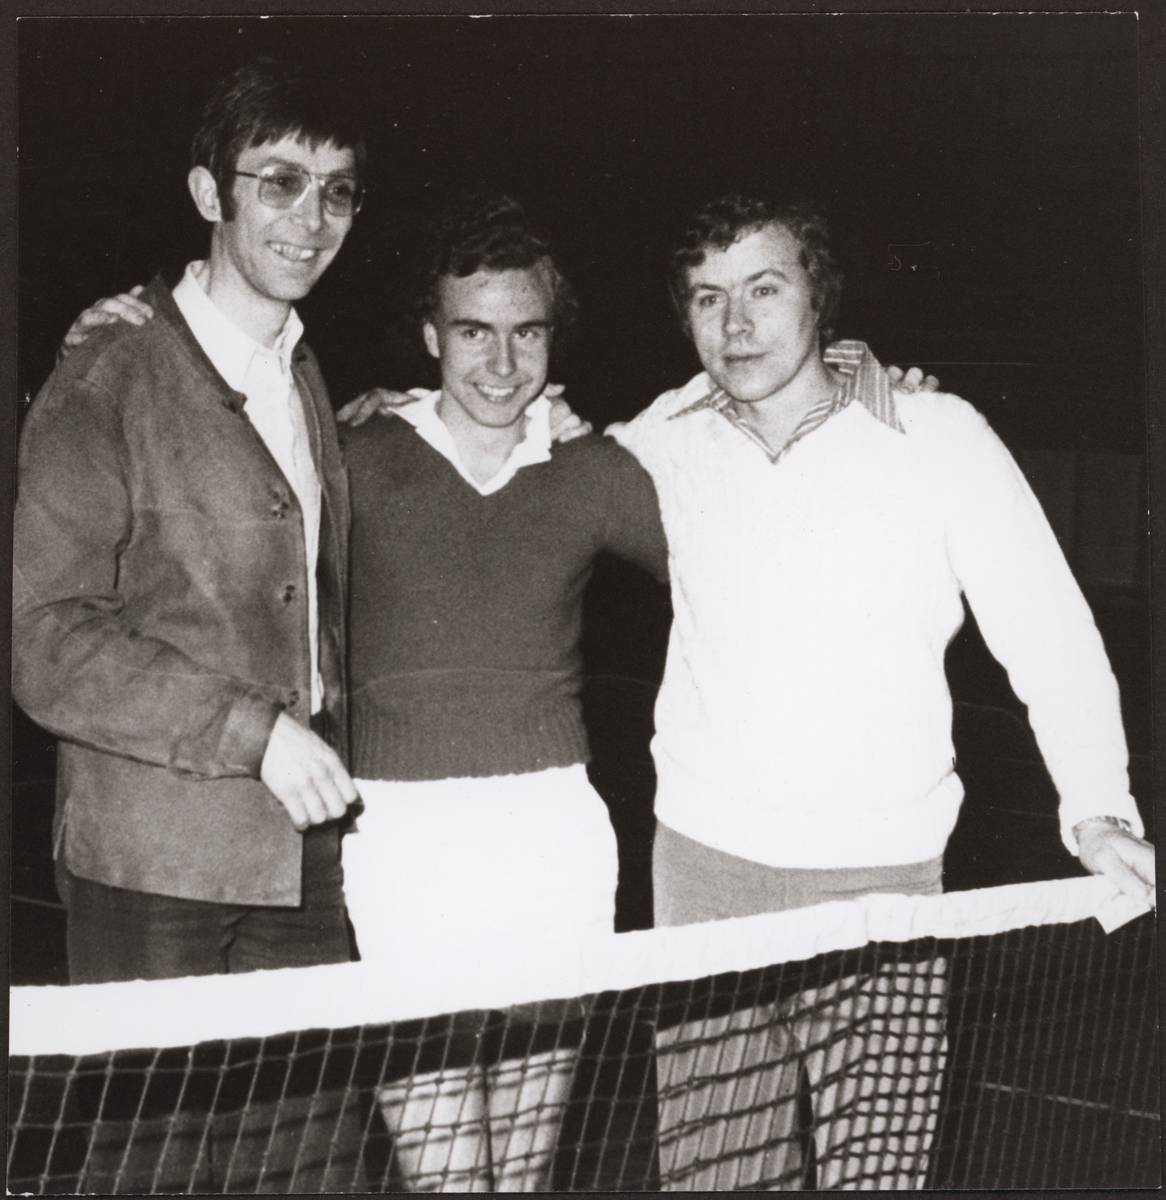 Från vänster: Roland Thörnqvist, Inge Svensson och Bert Johansson. Gruppsegrare i en tennisturnering.